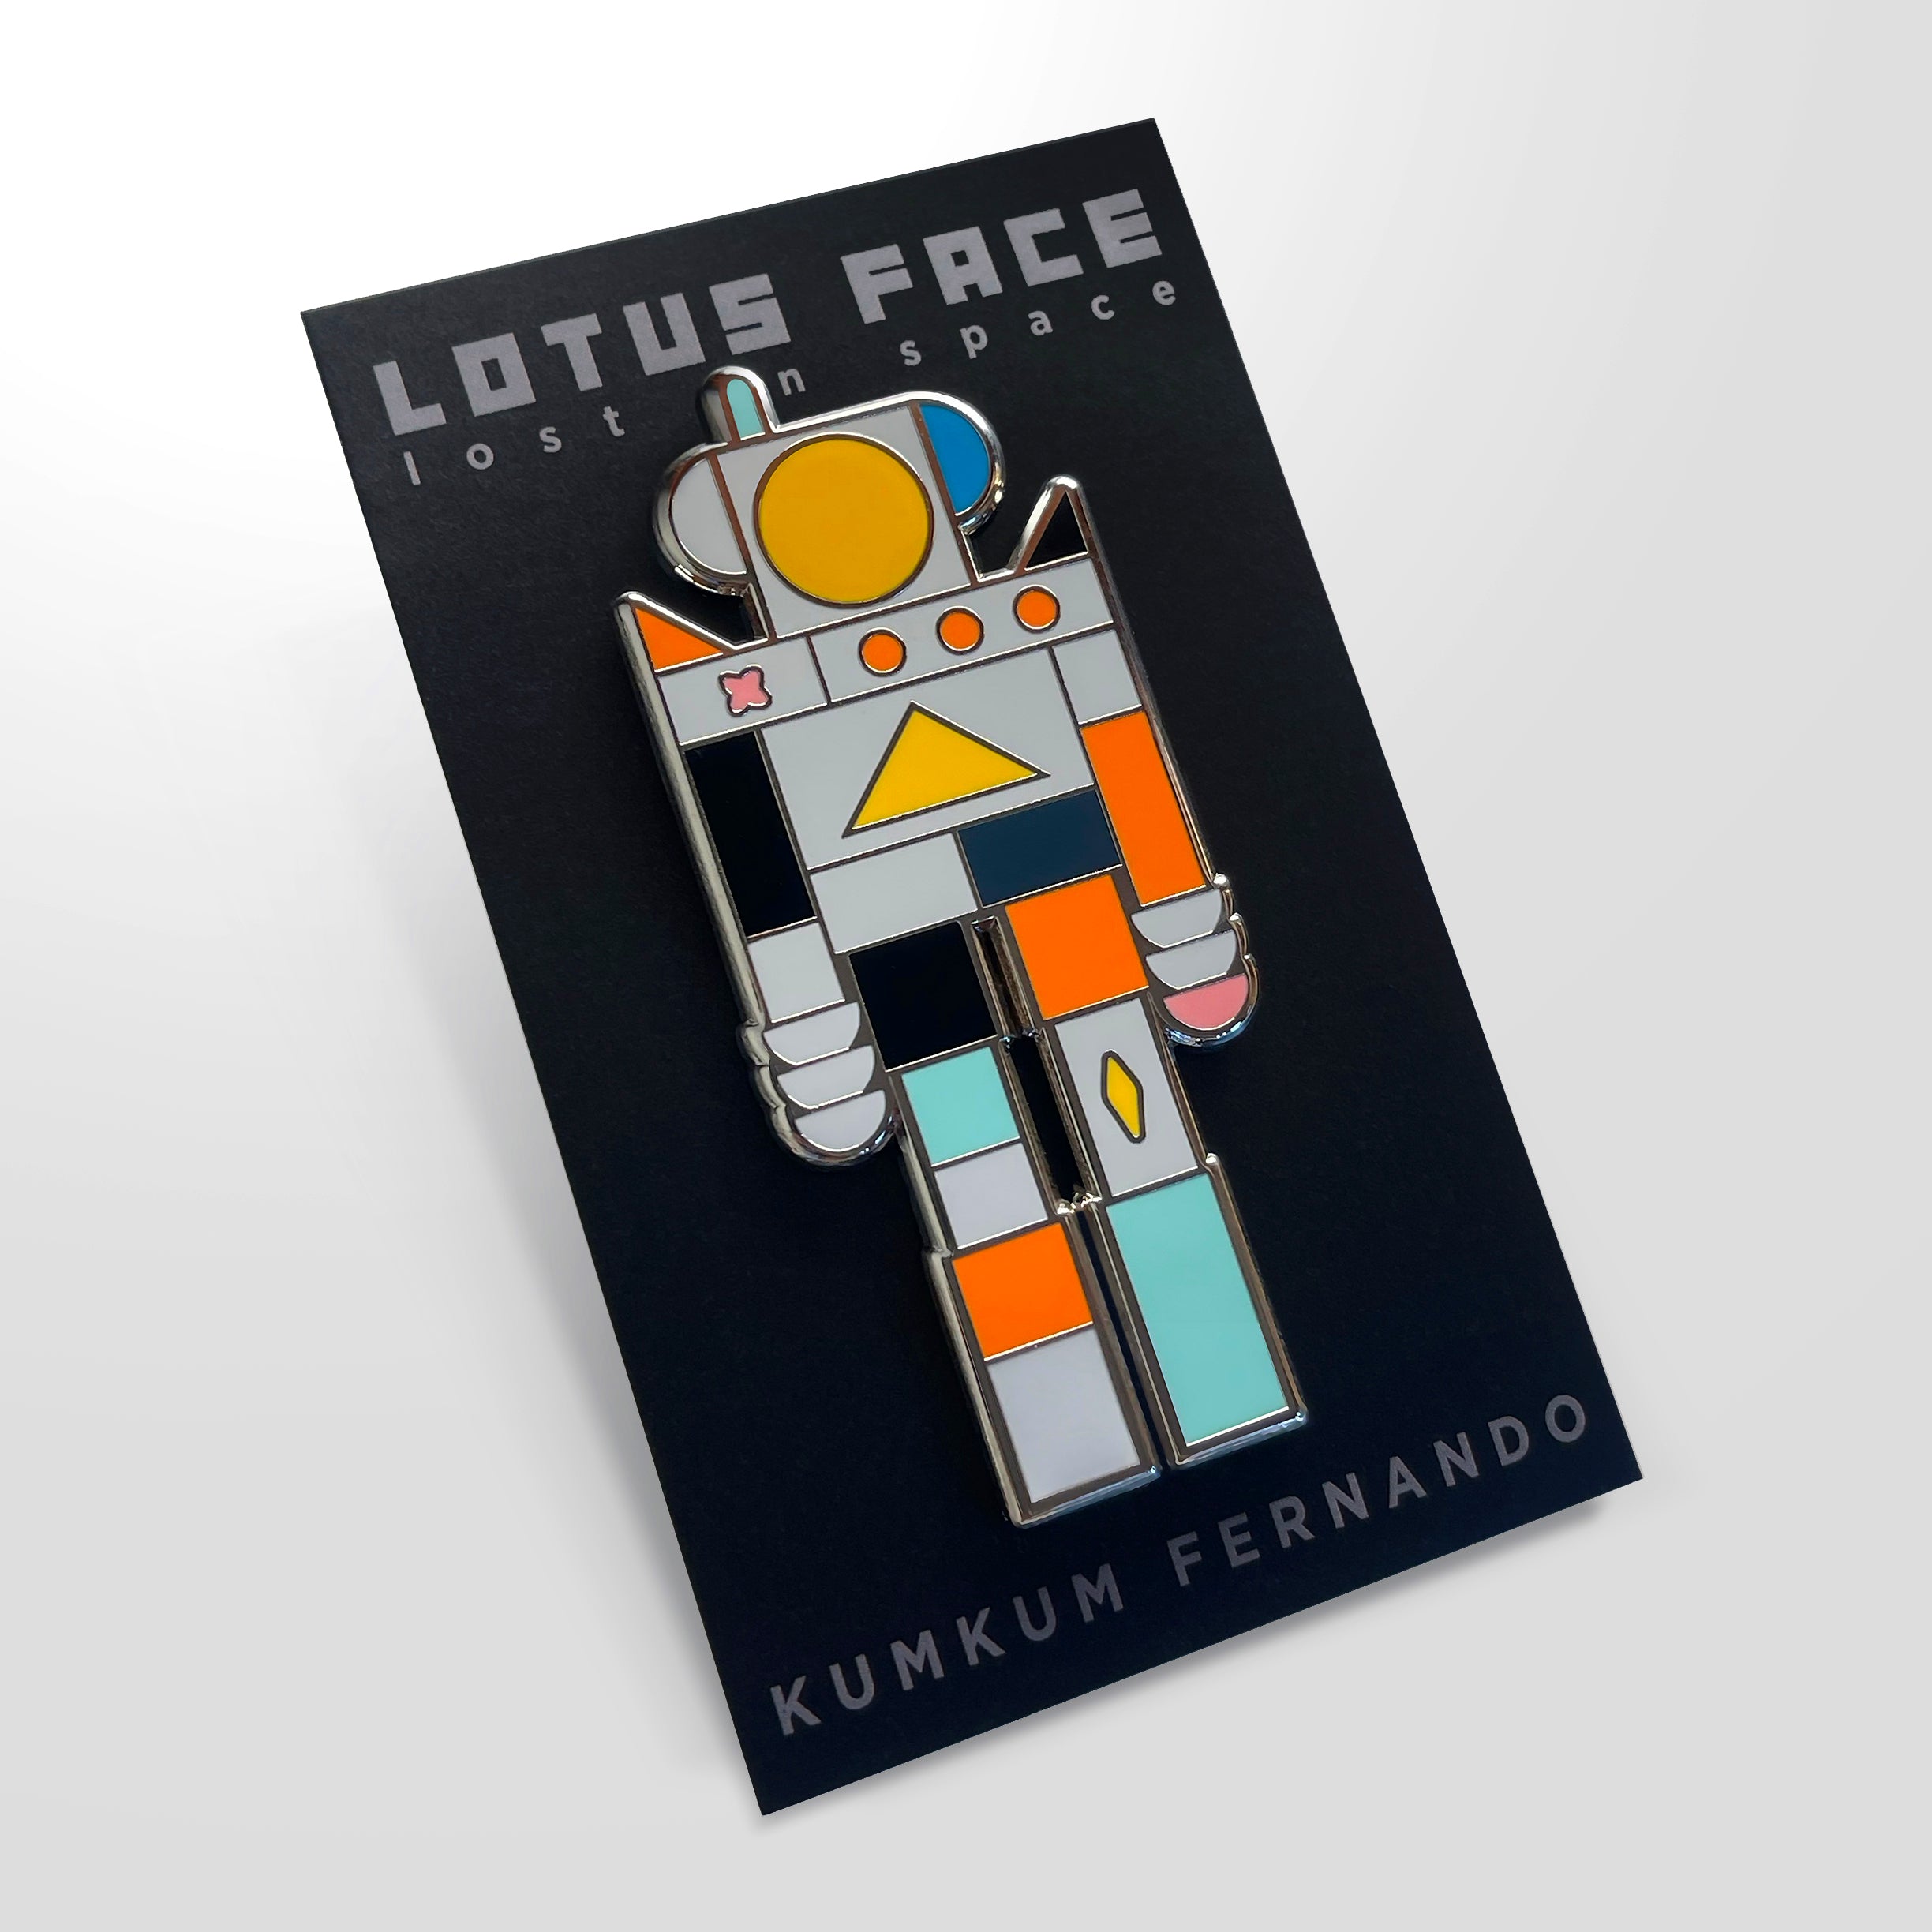 Kumkum Fernando, "Lotus Face Lost in Space"